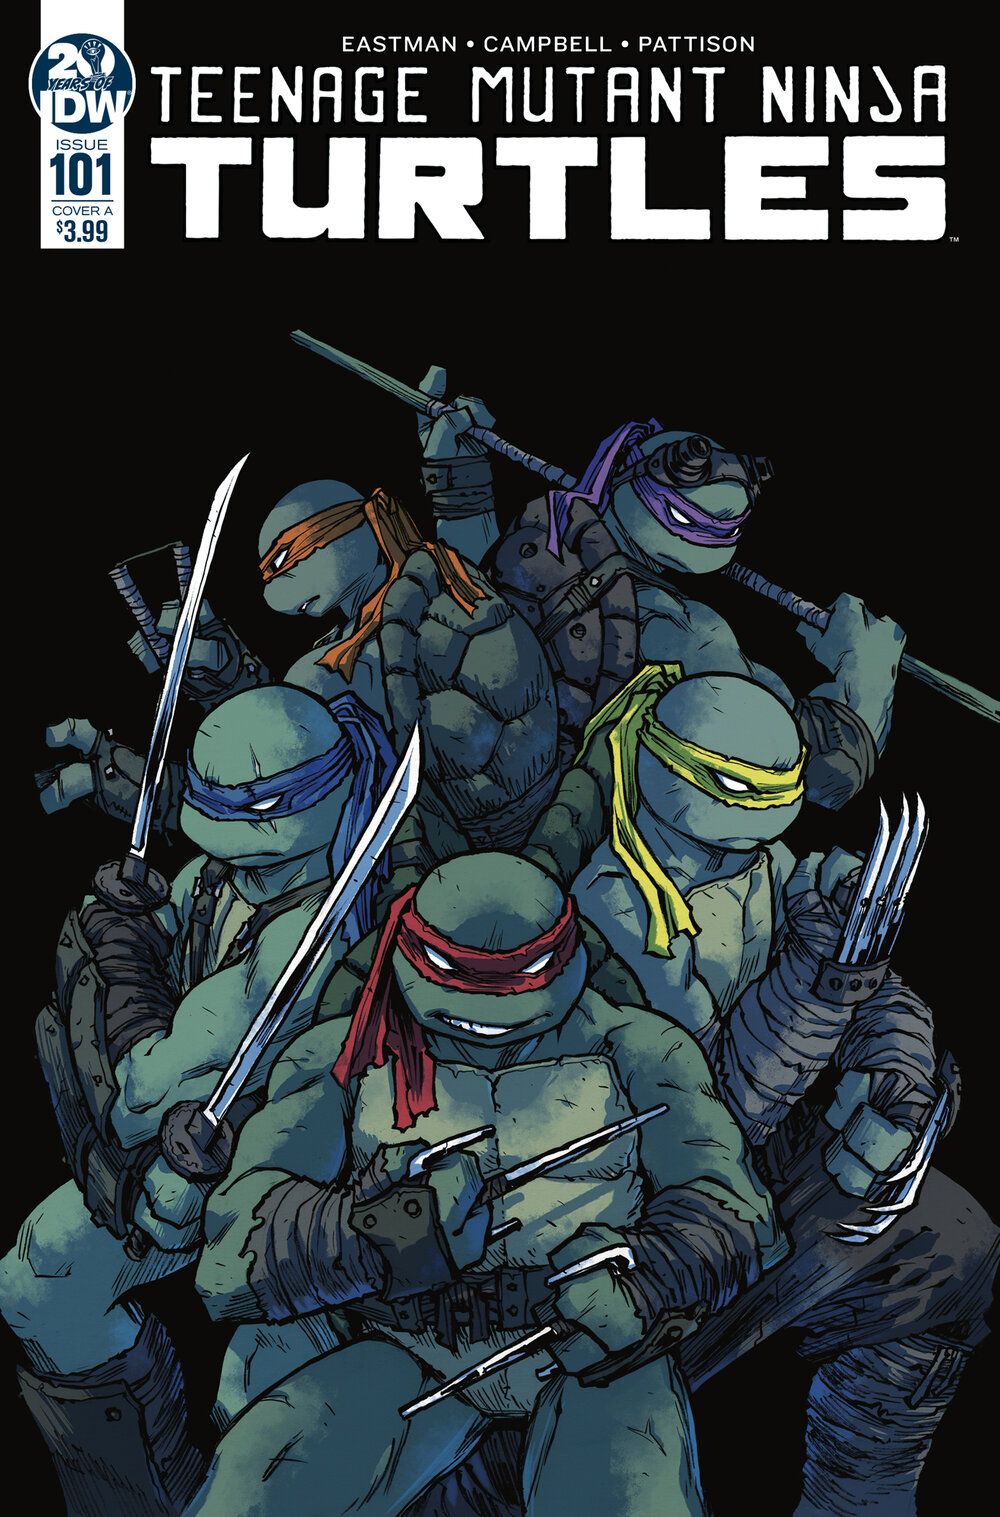 Teenage Mutant Ninja Turtles is a .comicsbookcase.com